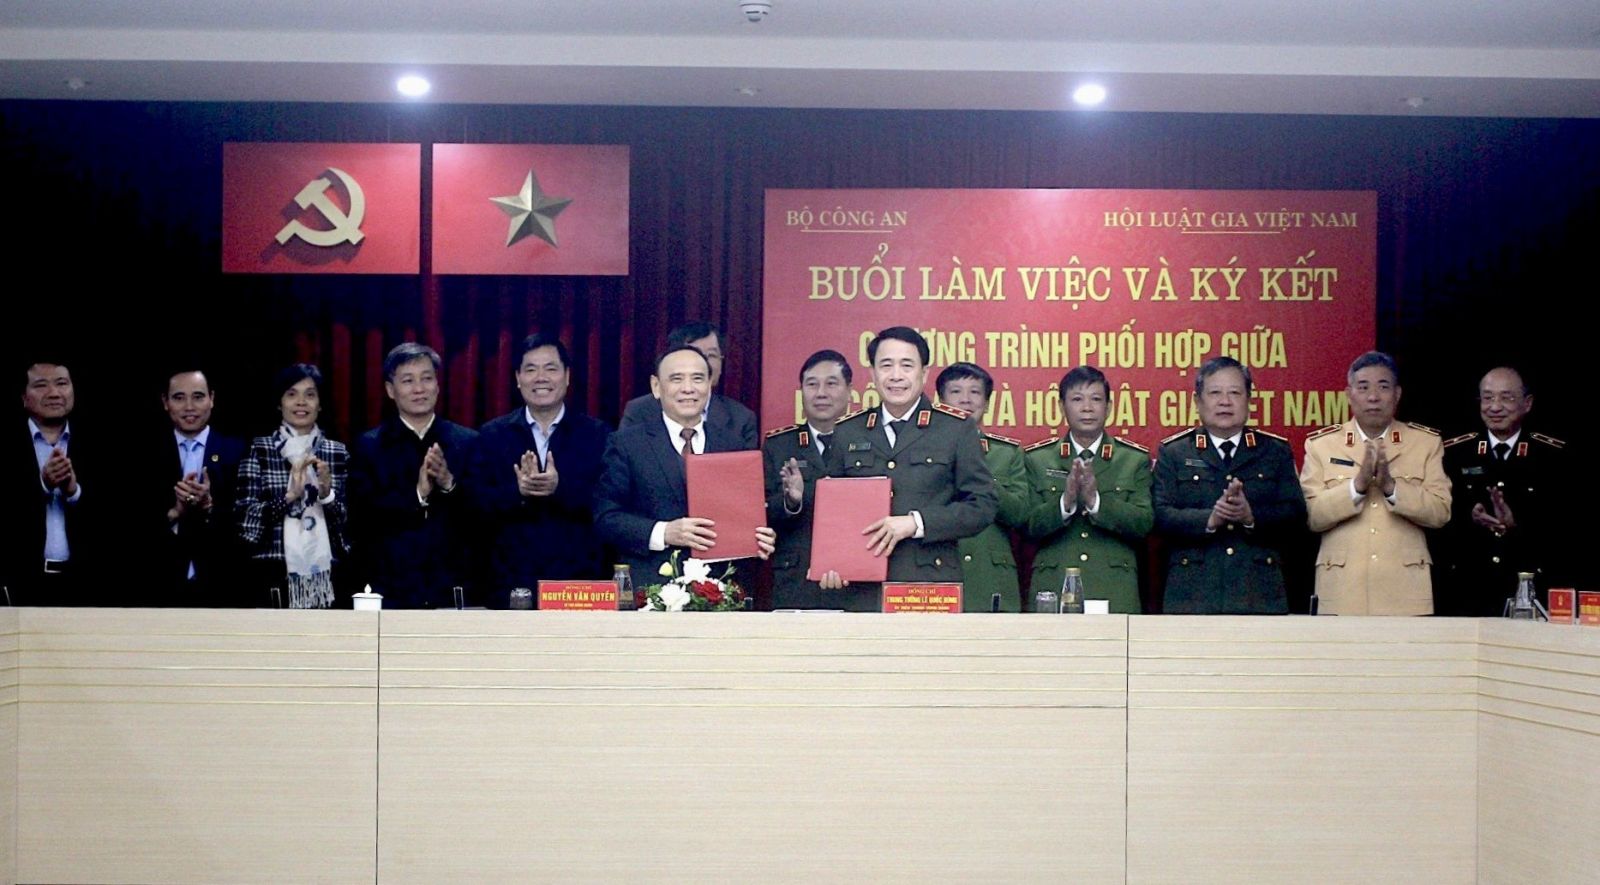 Hội Luật gia Việt Nam và Bộ Công an ký kết chương trình phối hợp